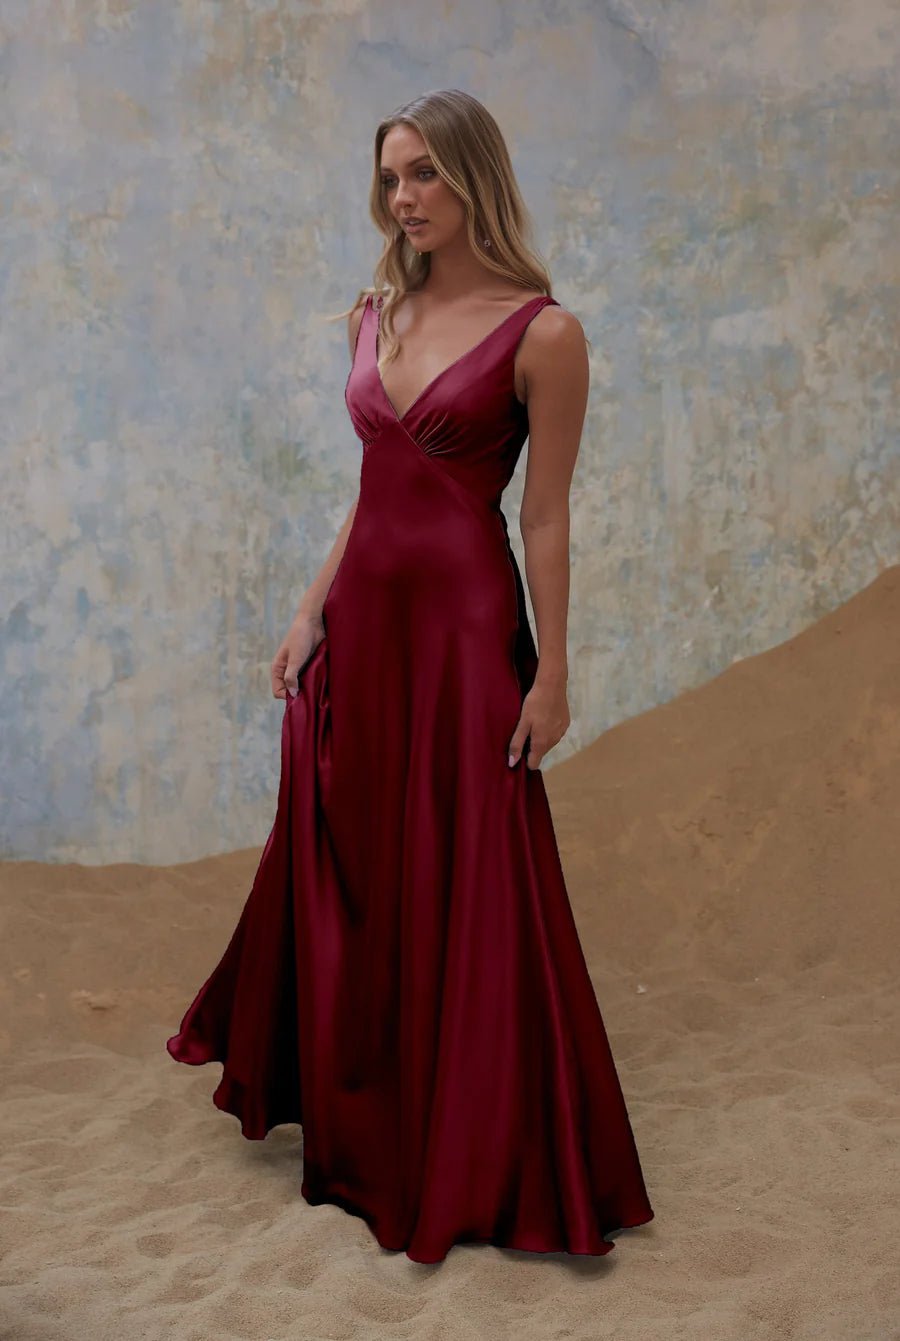 Avonlea Dress By Tania Olsen Sizes 6 - 16 TO2428 - ElissaJay Boutique